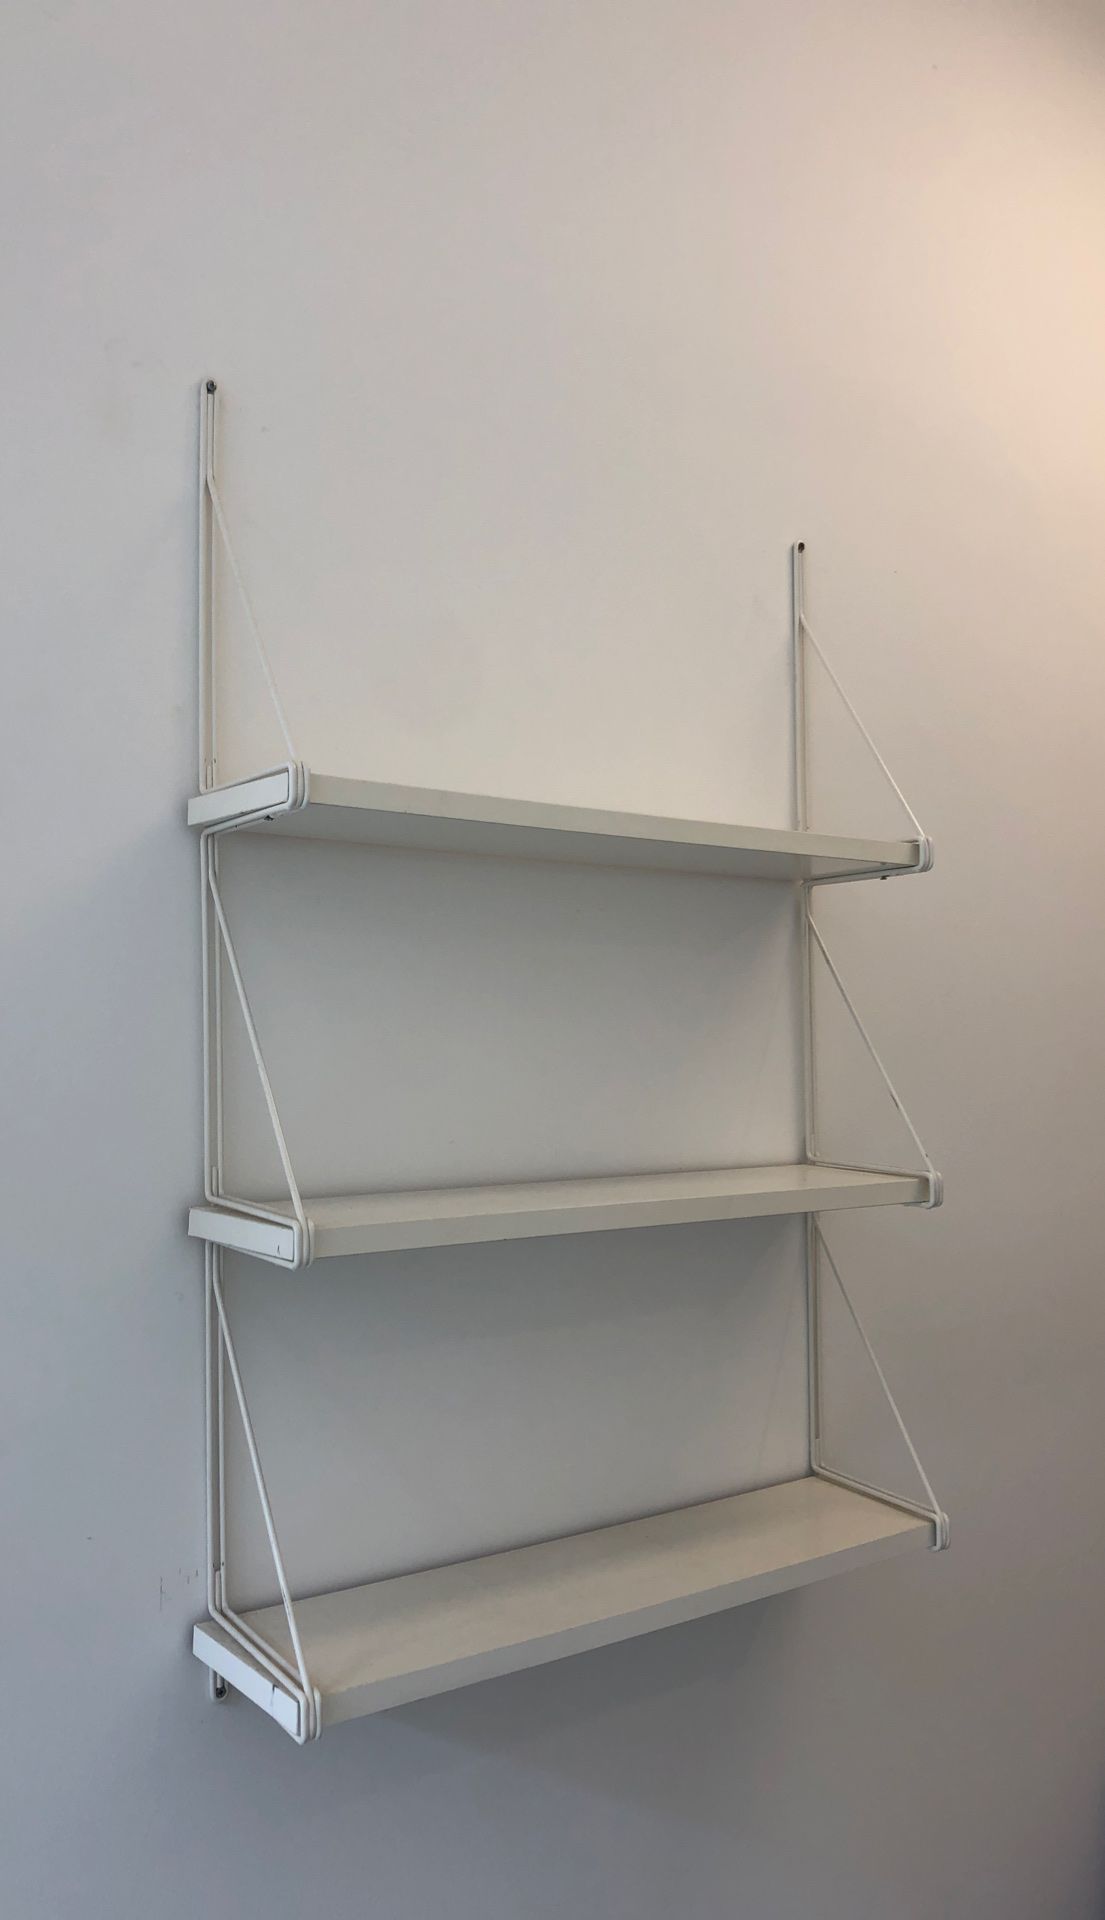 White “floating” shelves